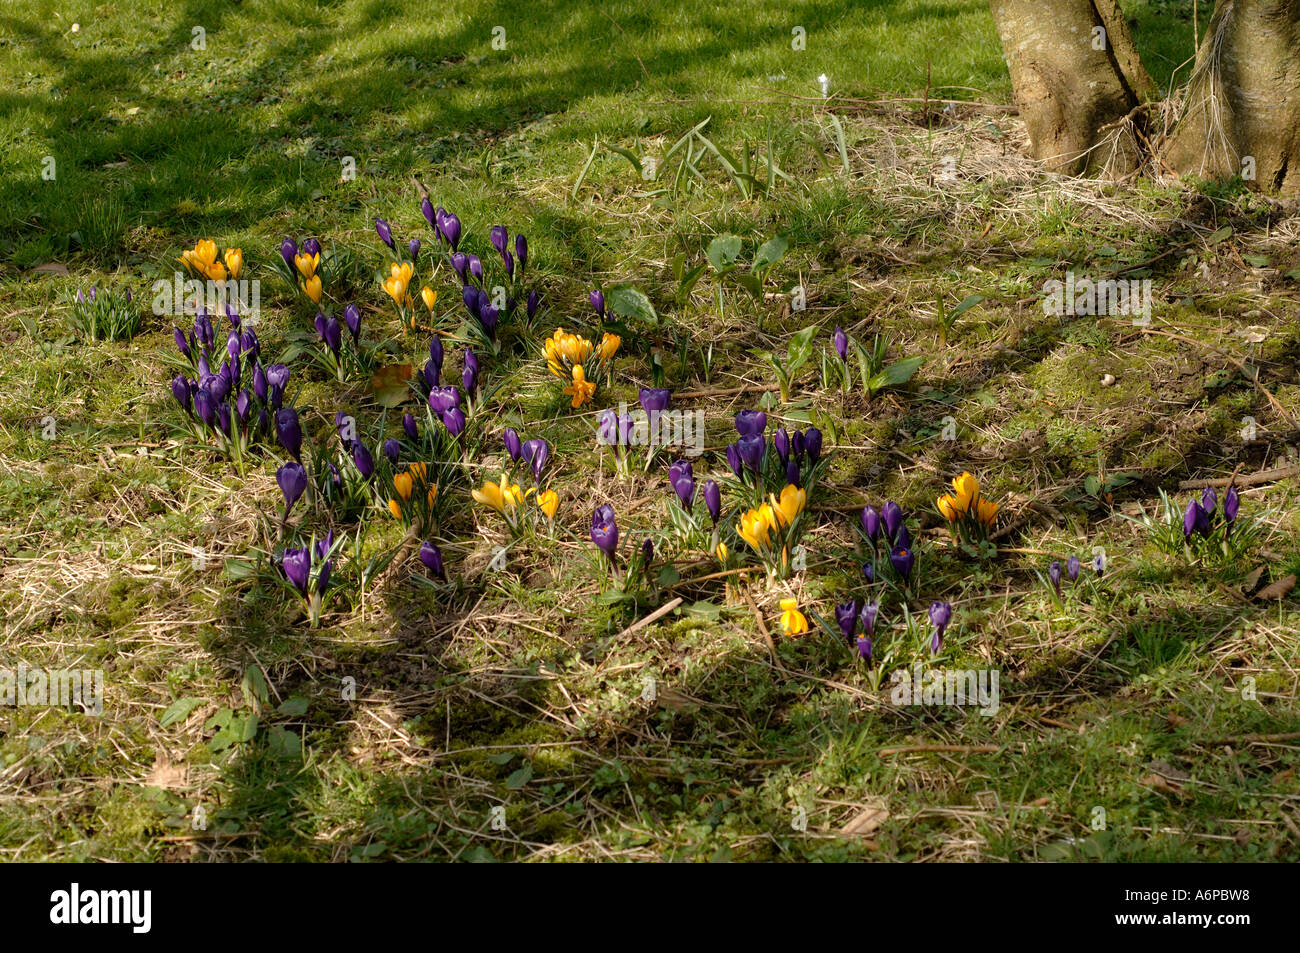 Garden crocus purple and yellow varieties in flower under a tree Stock Photo